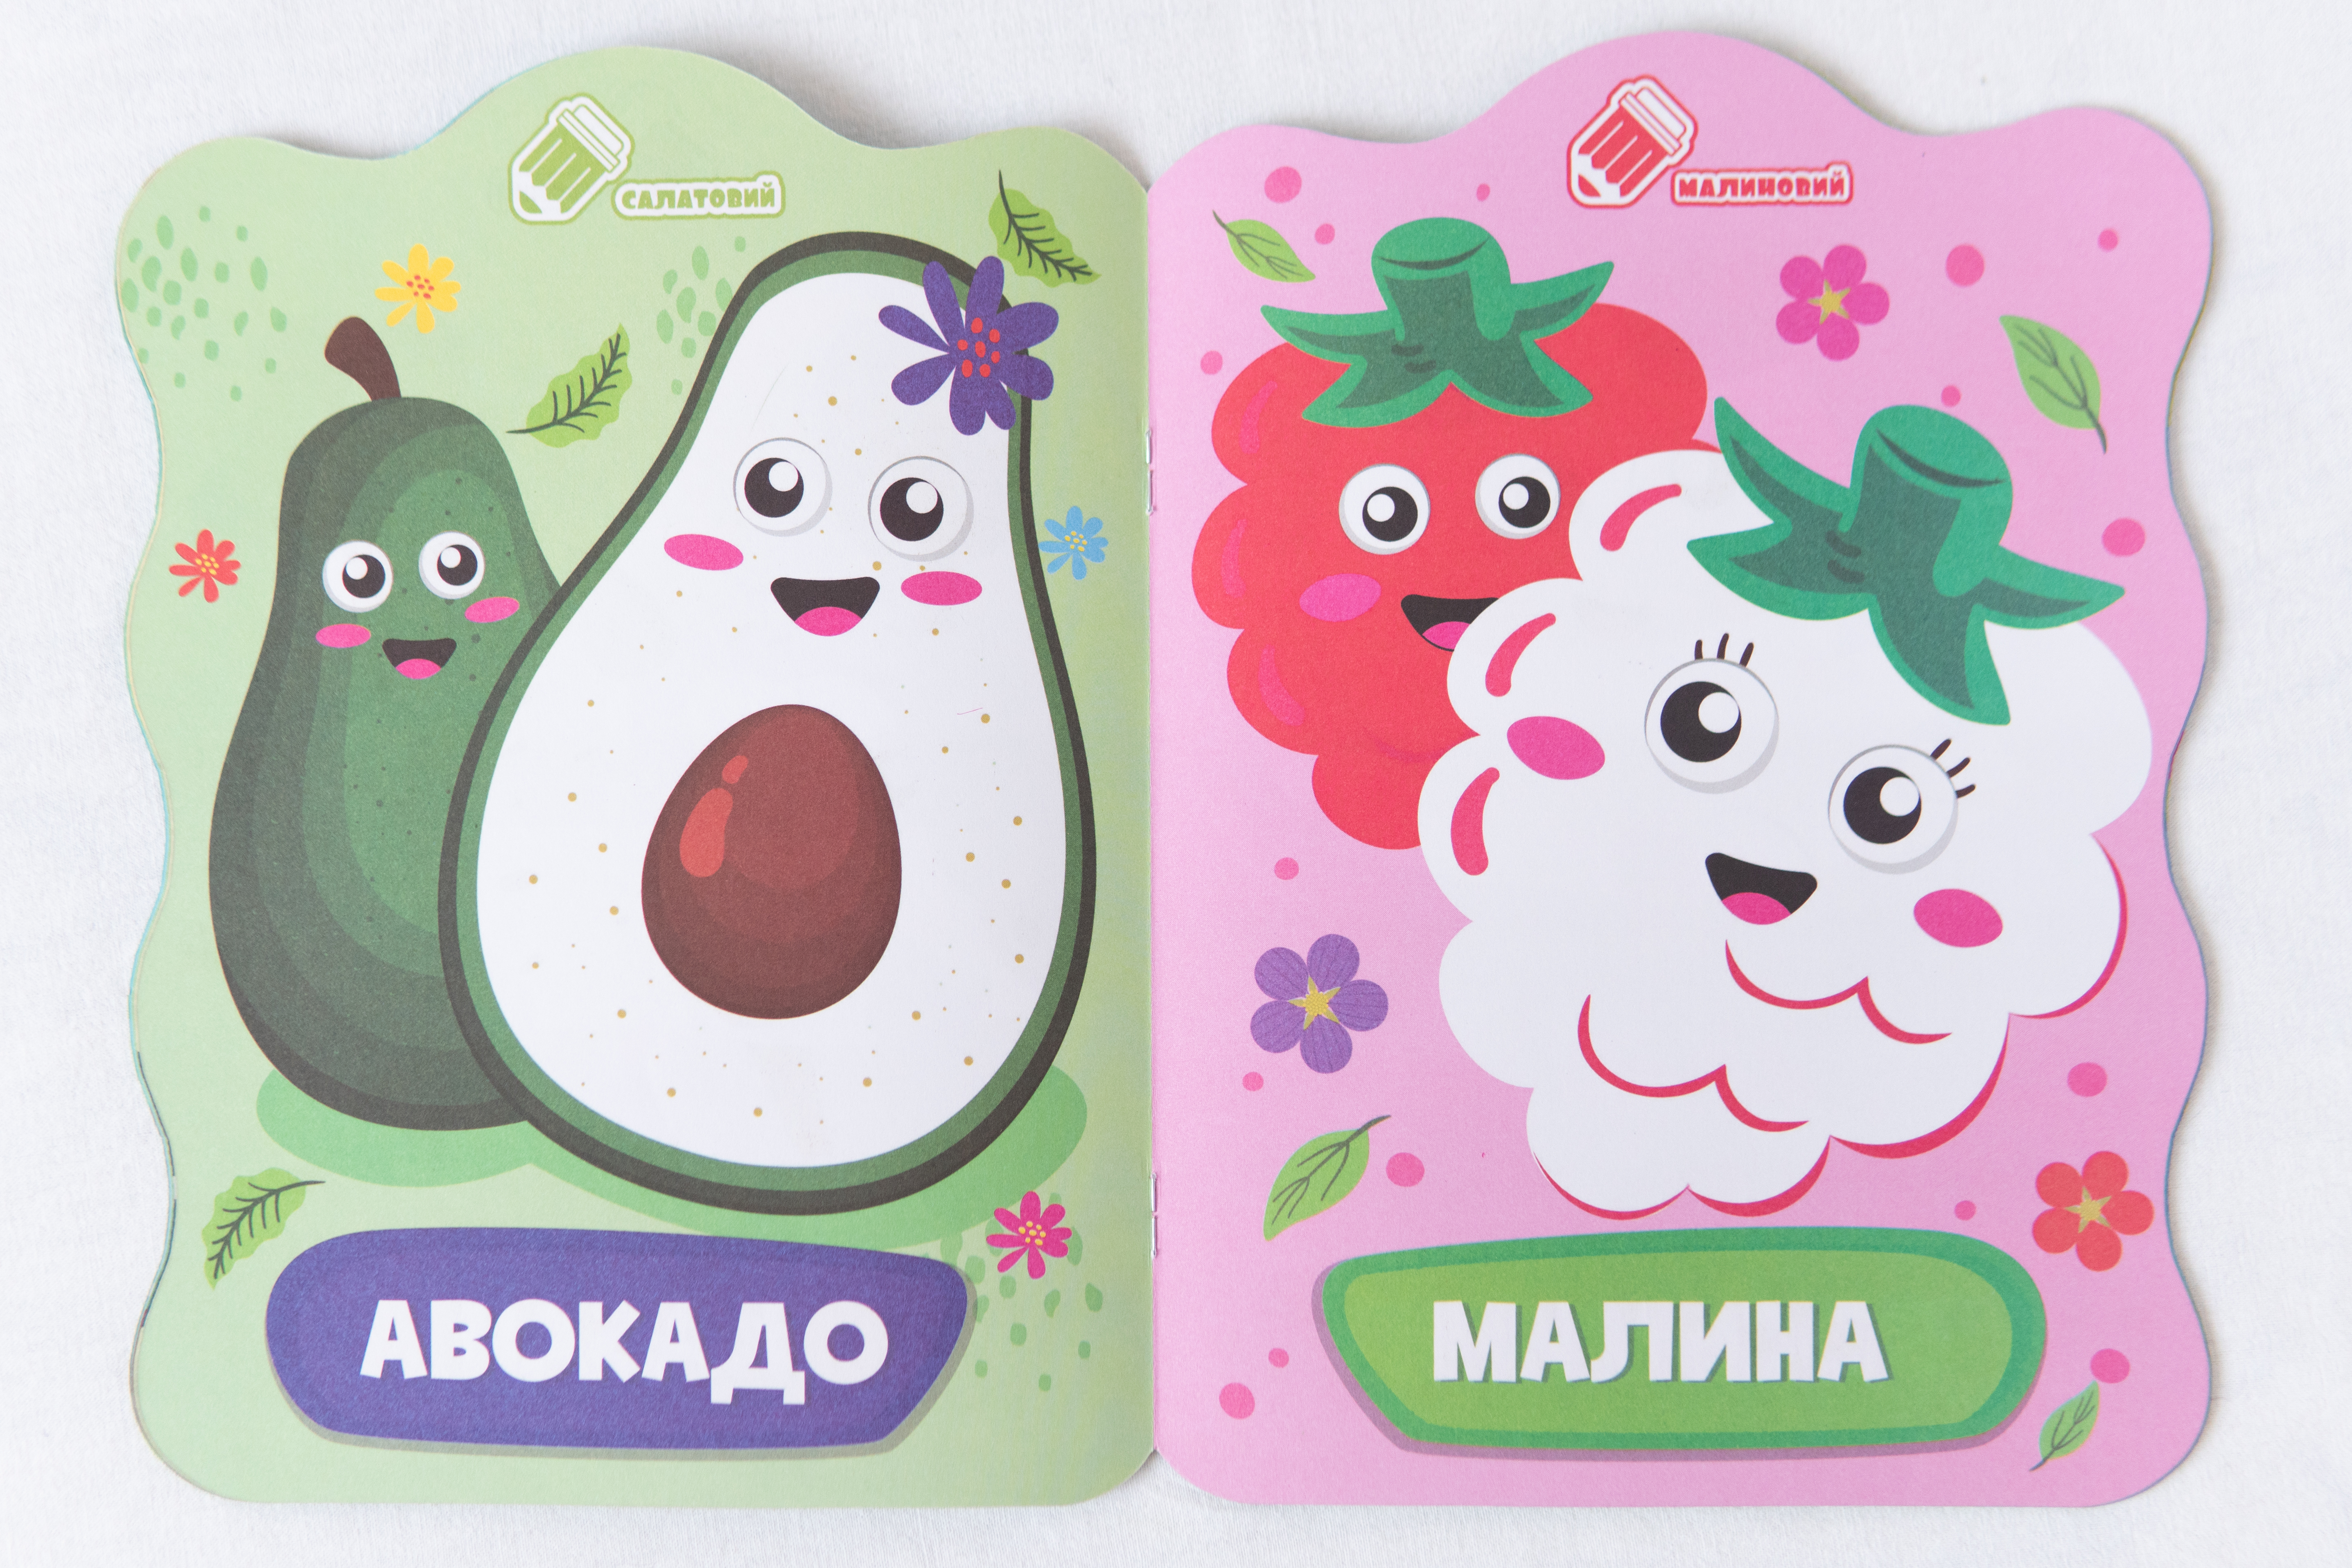 Malbuch für Kleinkinder Mit Hinweisen Der Bär (ukrainische Ausgabe)/Malbuch für Kleinkinder Mit Hinweisen Der Bär (ukrainische Ausgabe)